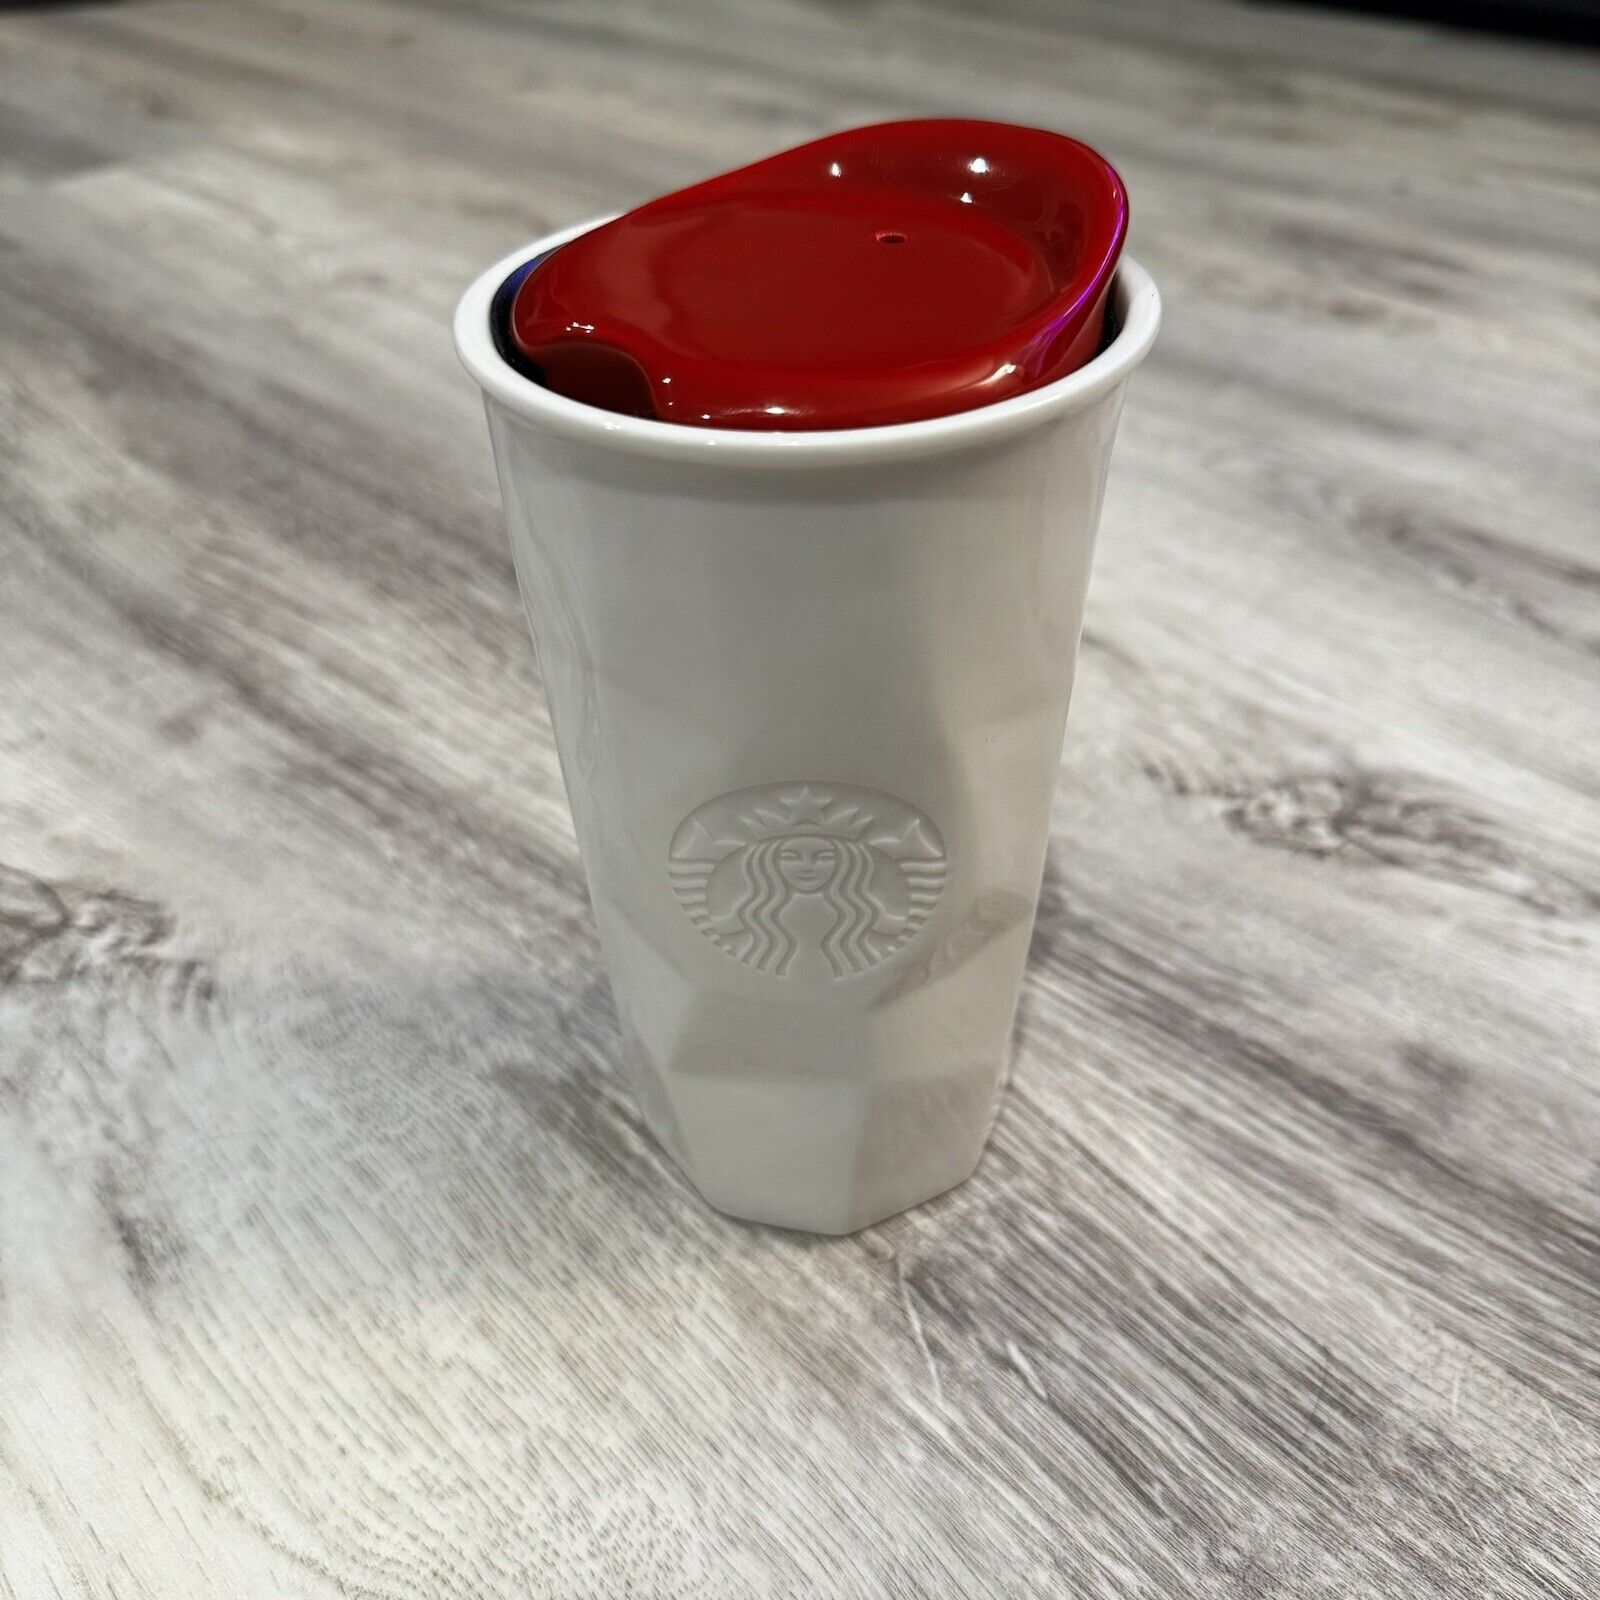 Starbucks Ceramic White Mug Tumbler 10 oz Red Lid 2013 Travel Pre-Owned